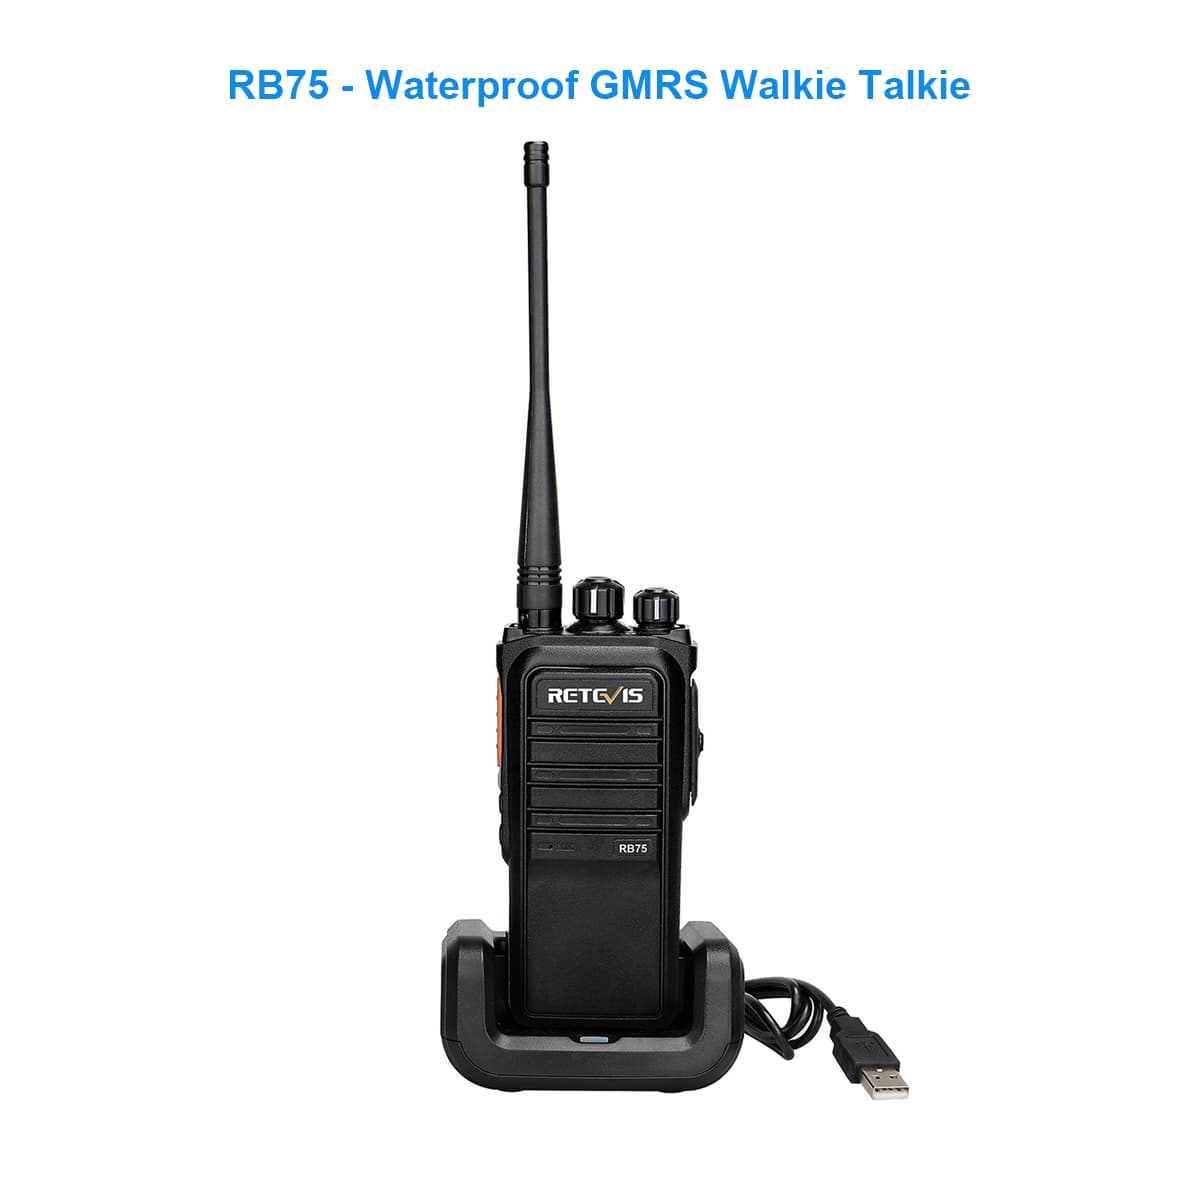 Waterproof GMRS walkie talkie-RB75